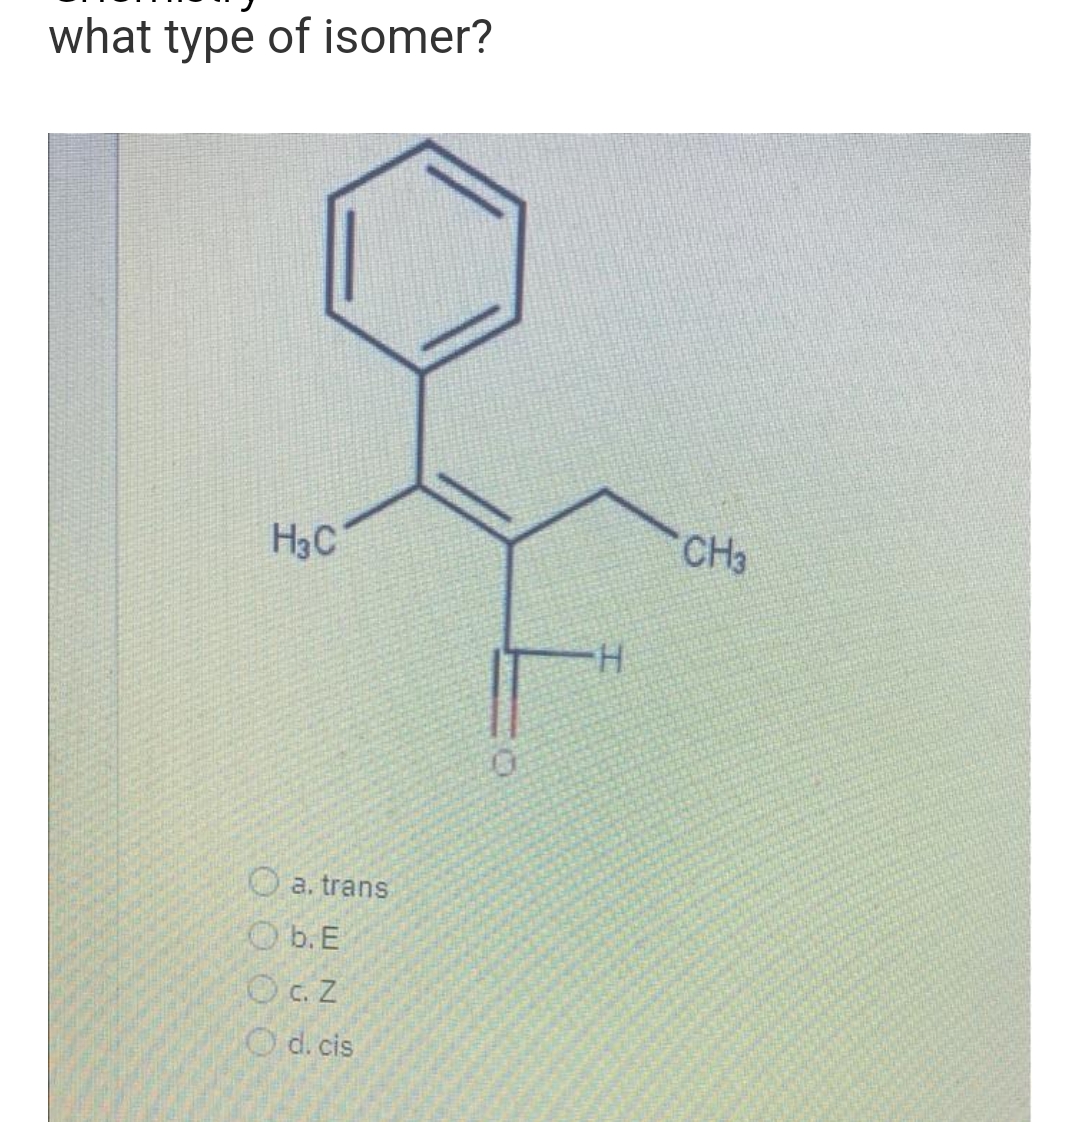 what type of isomer?
H3C
CH3
H.
O a. trans
O b. E
OC.Z
O d. cis
